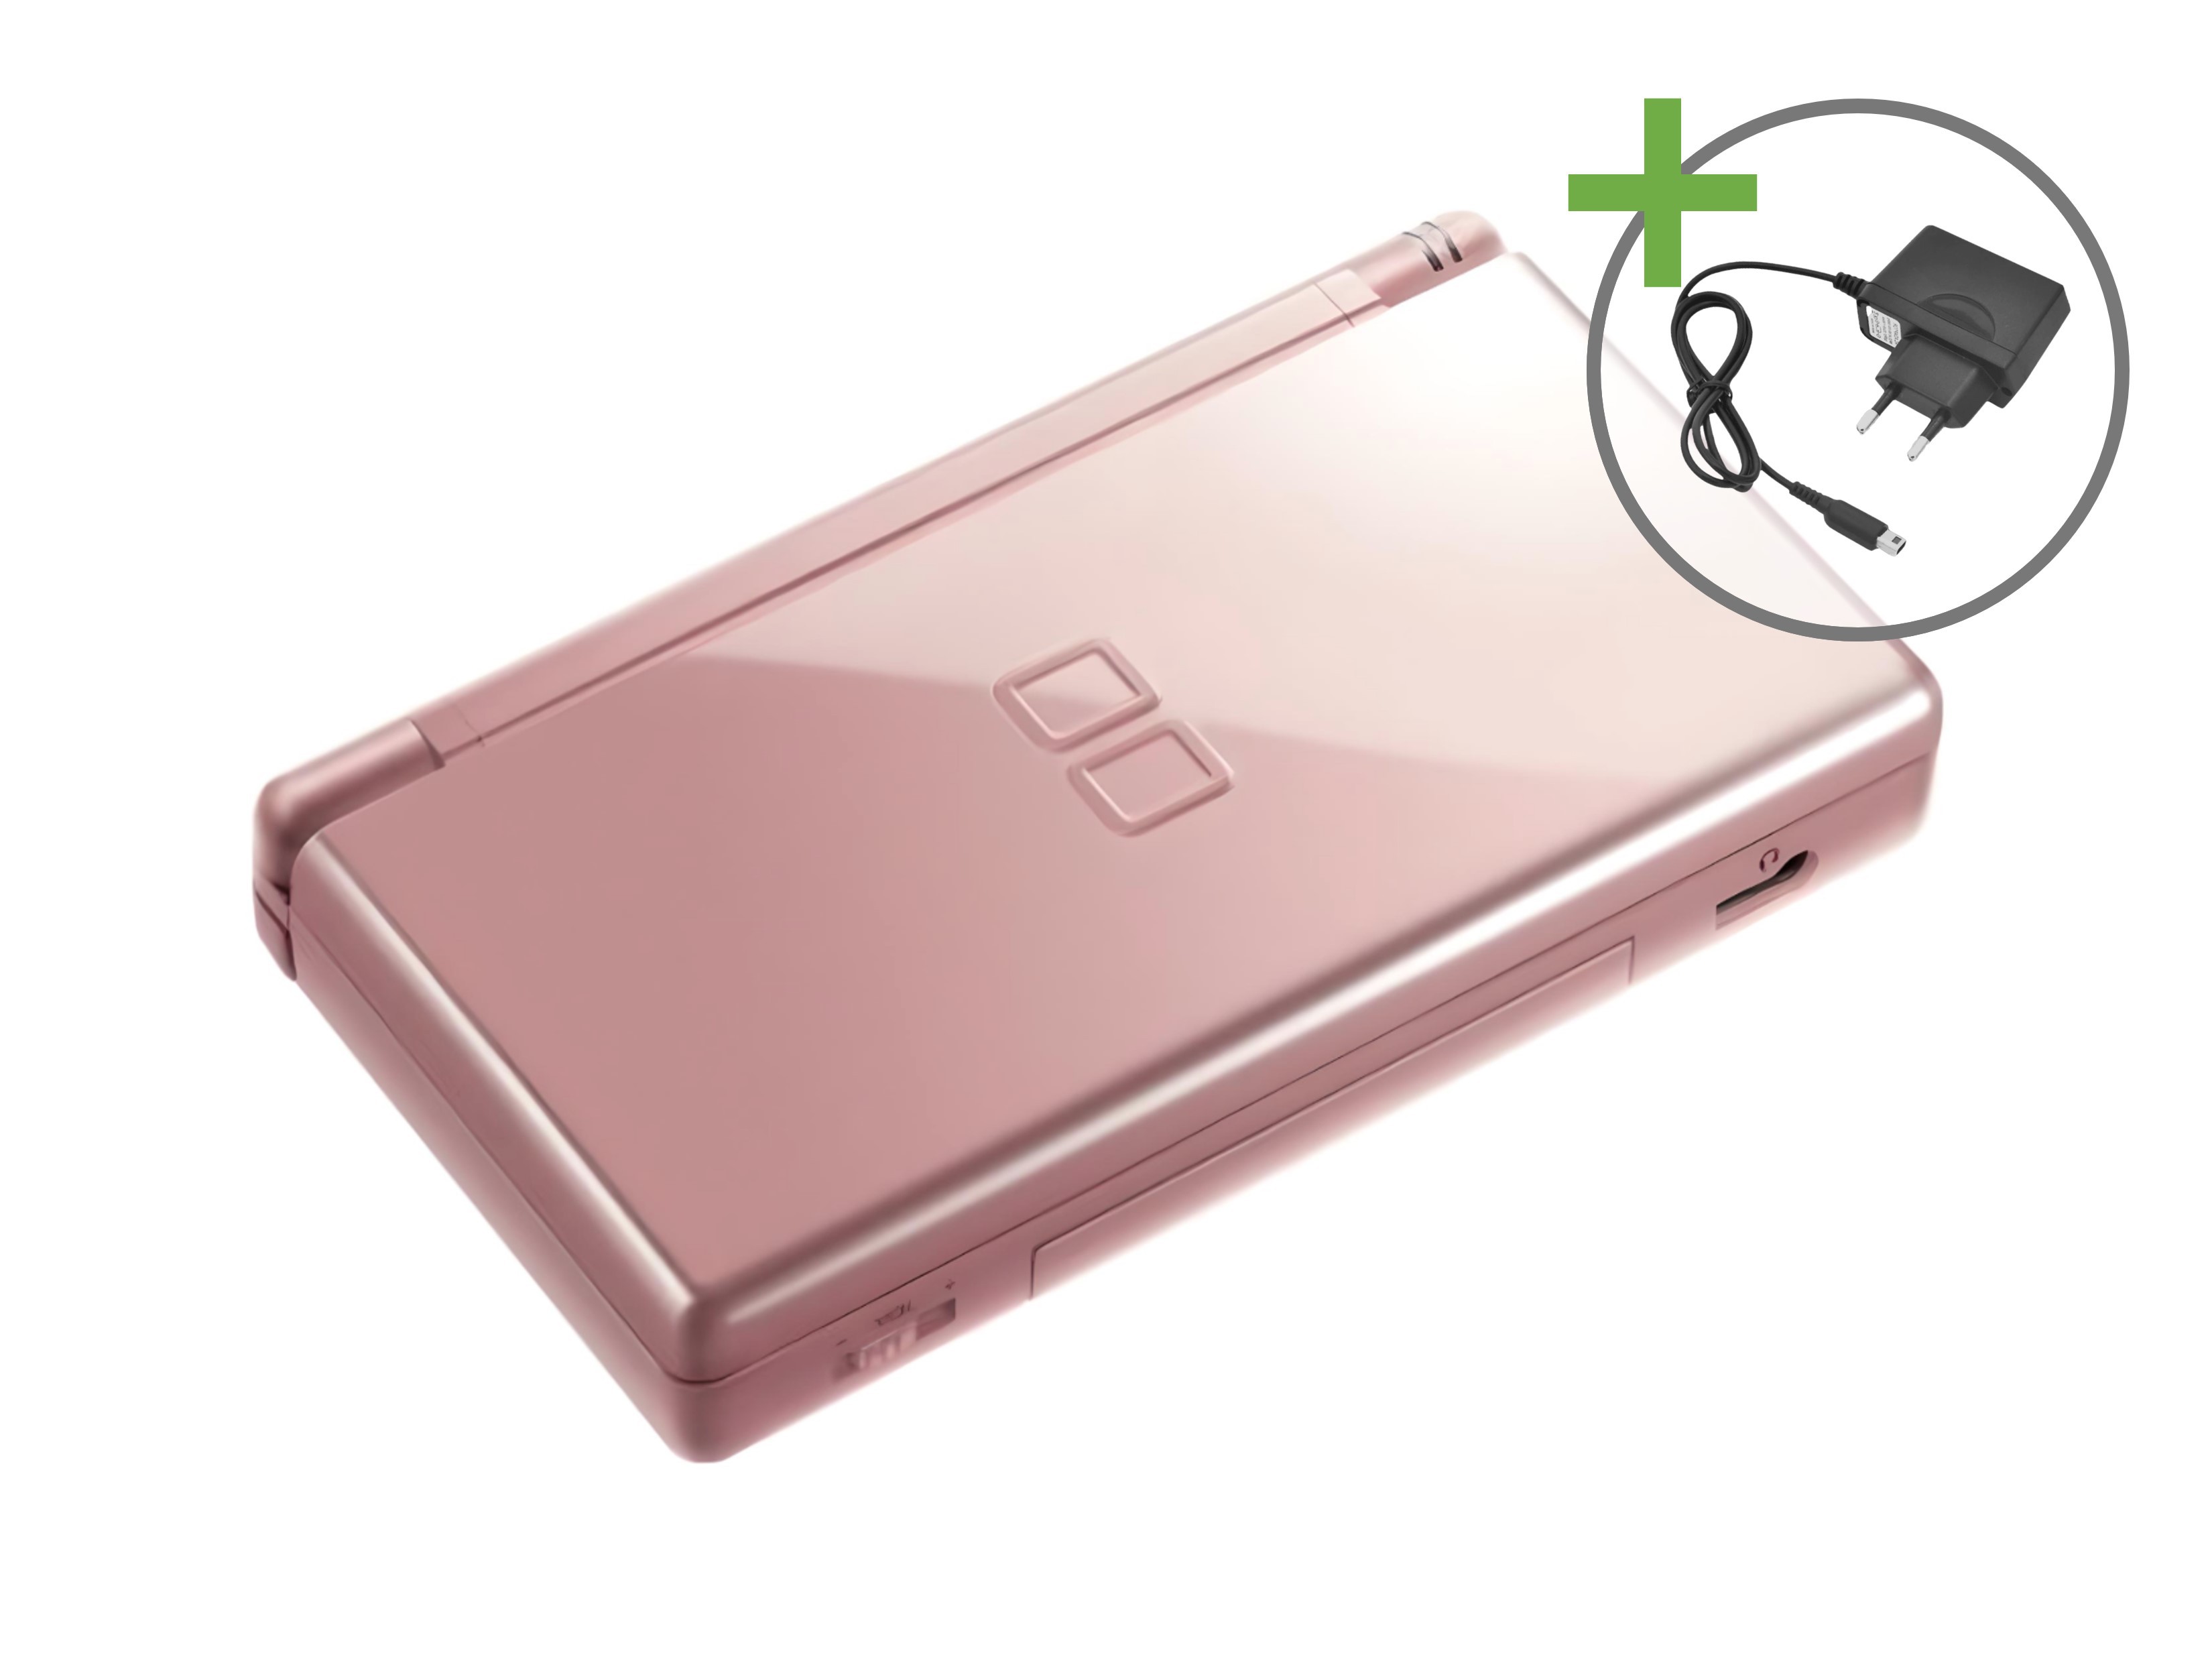 Nintendo DS Lite - Metallic Pink - Nintendo DS Hardware - 2